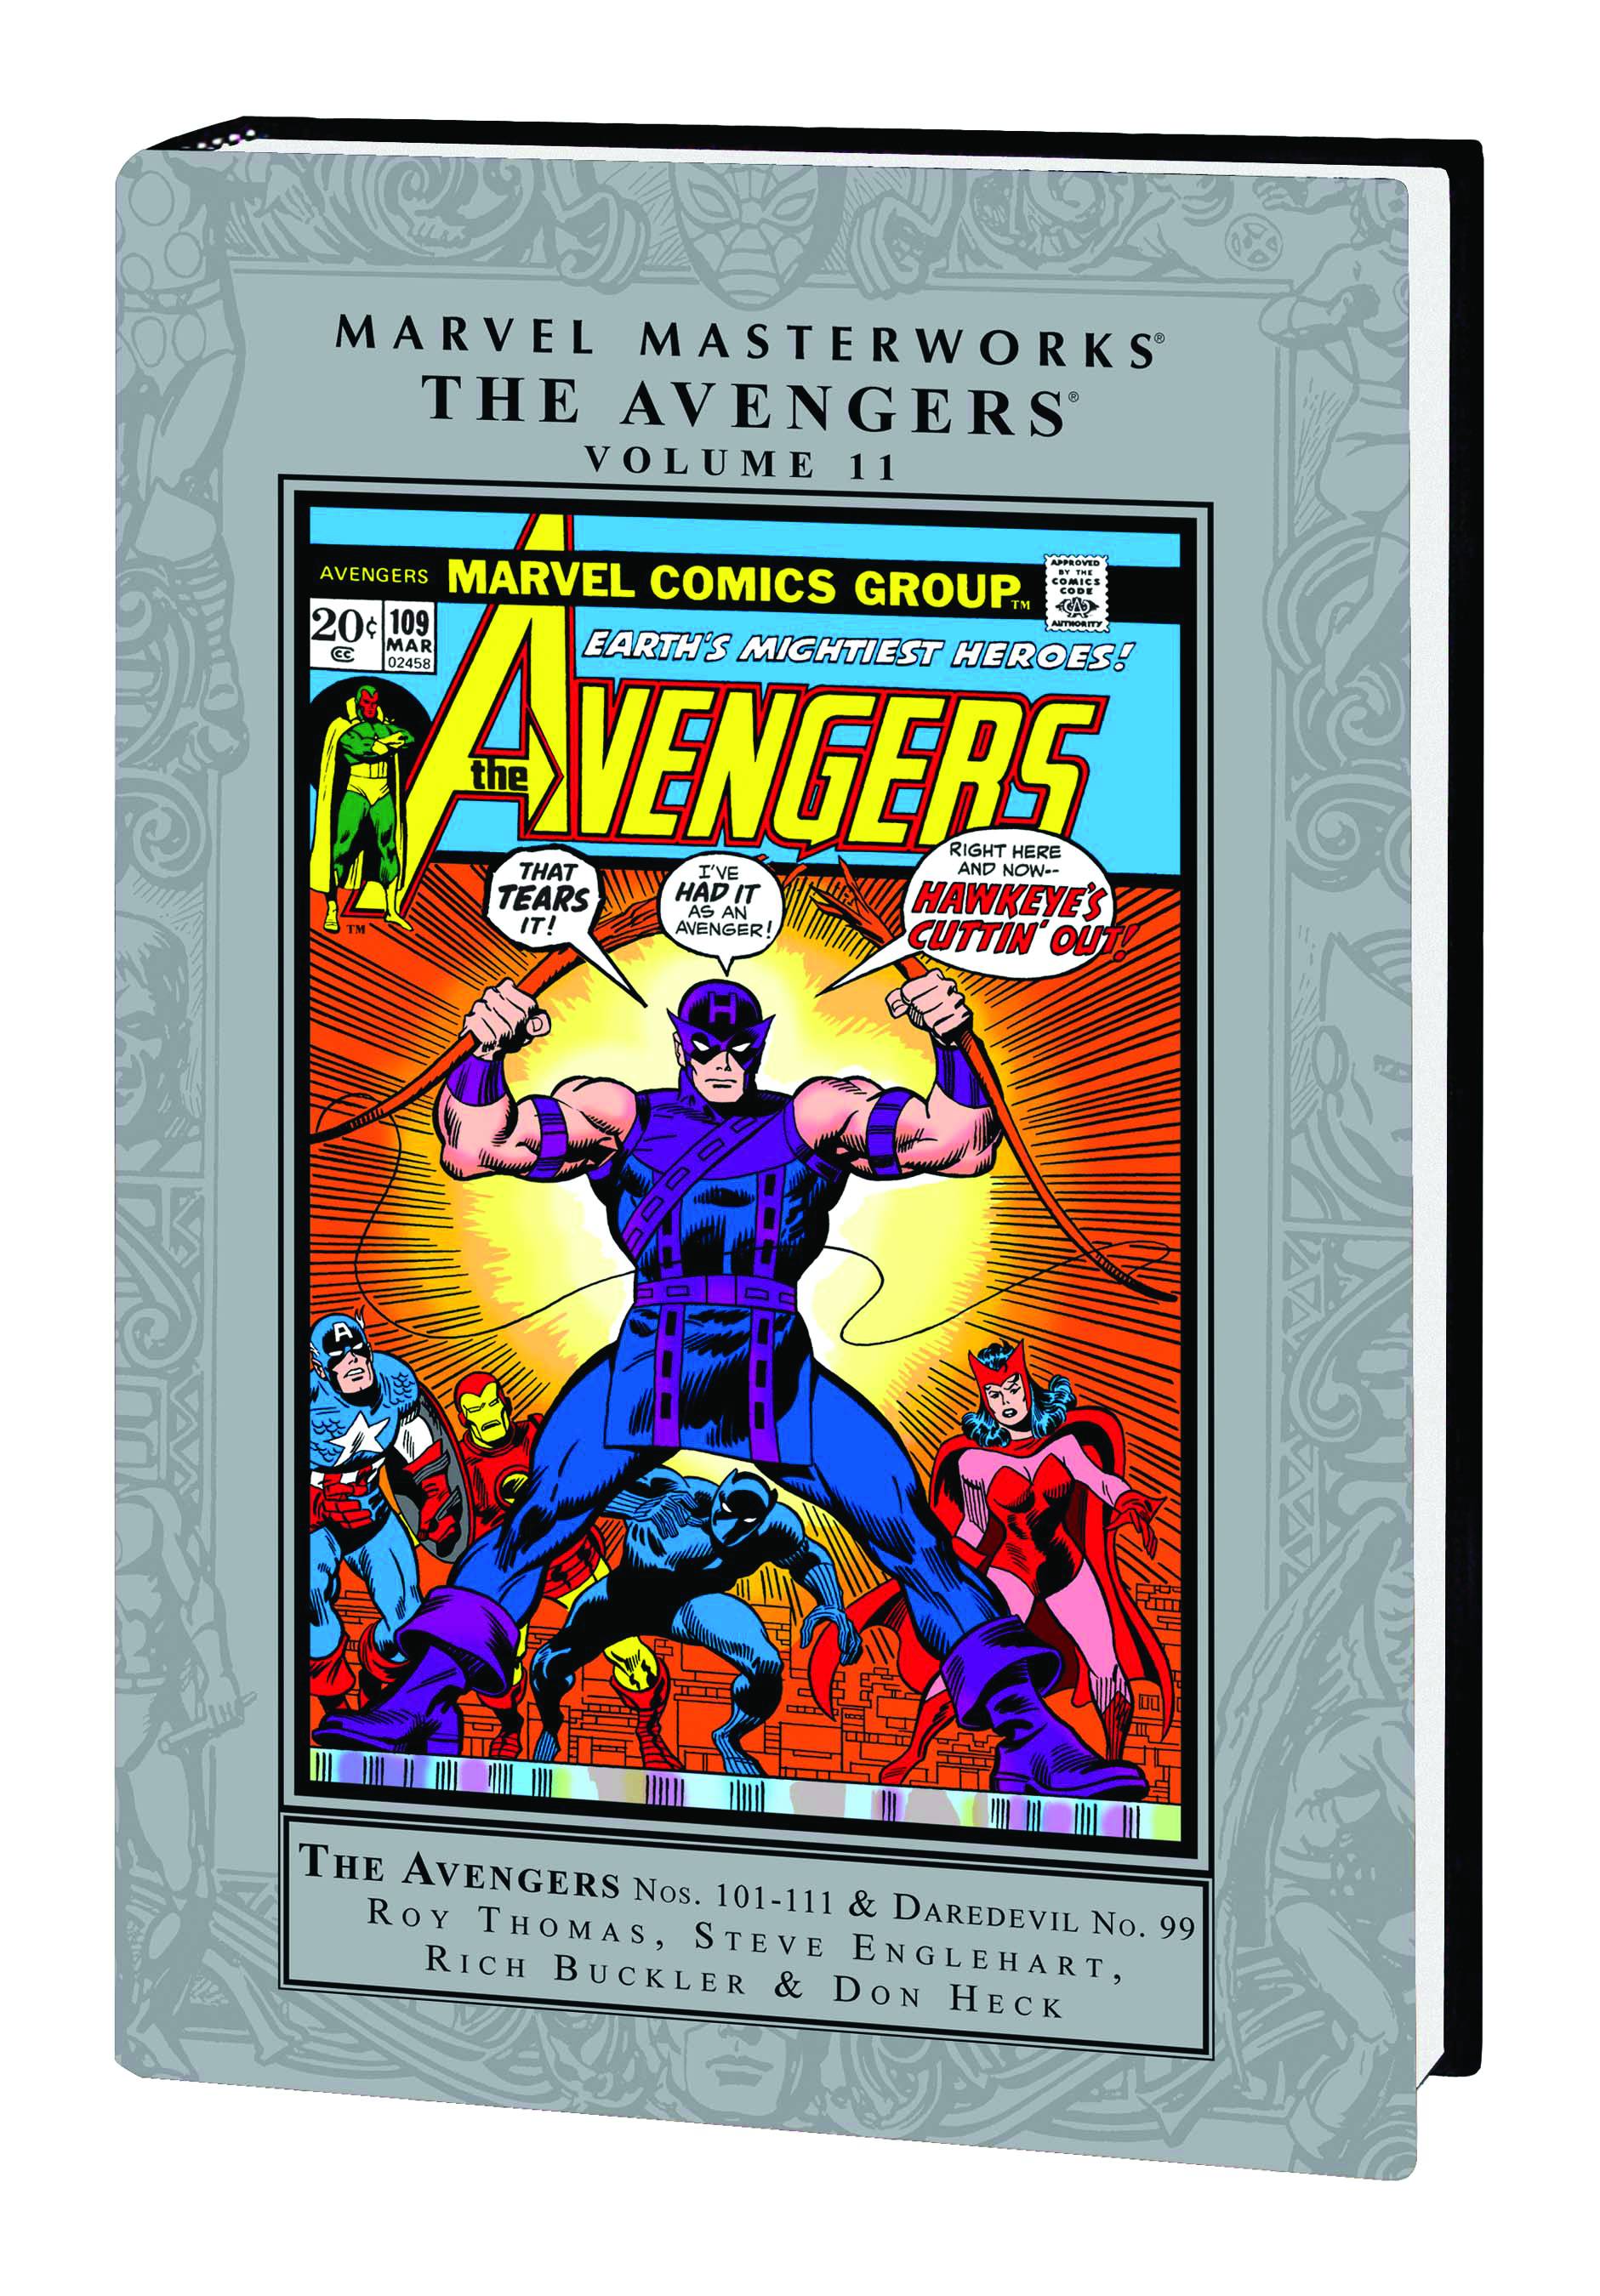 Marvel Masterworks The Avengers Hardcover Volume 11